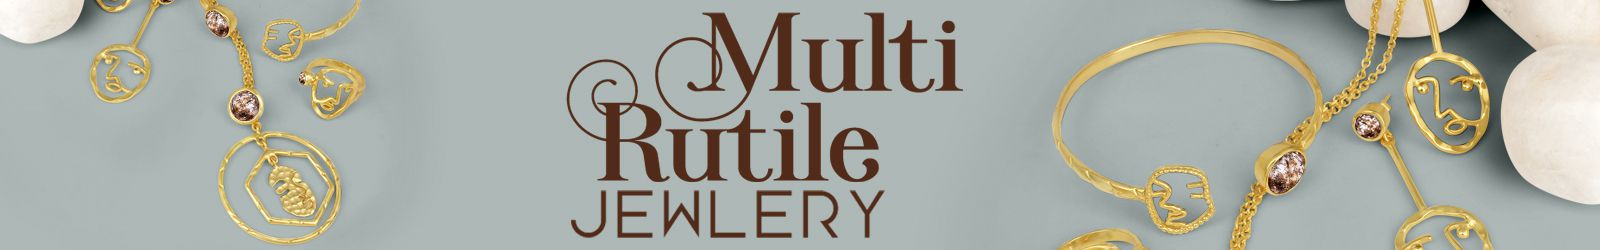 Silver Multi Rutile Jewelry Wholesale Supplier